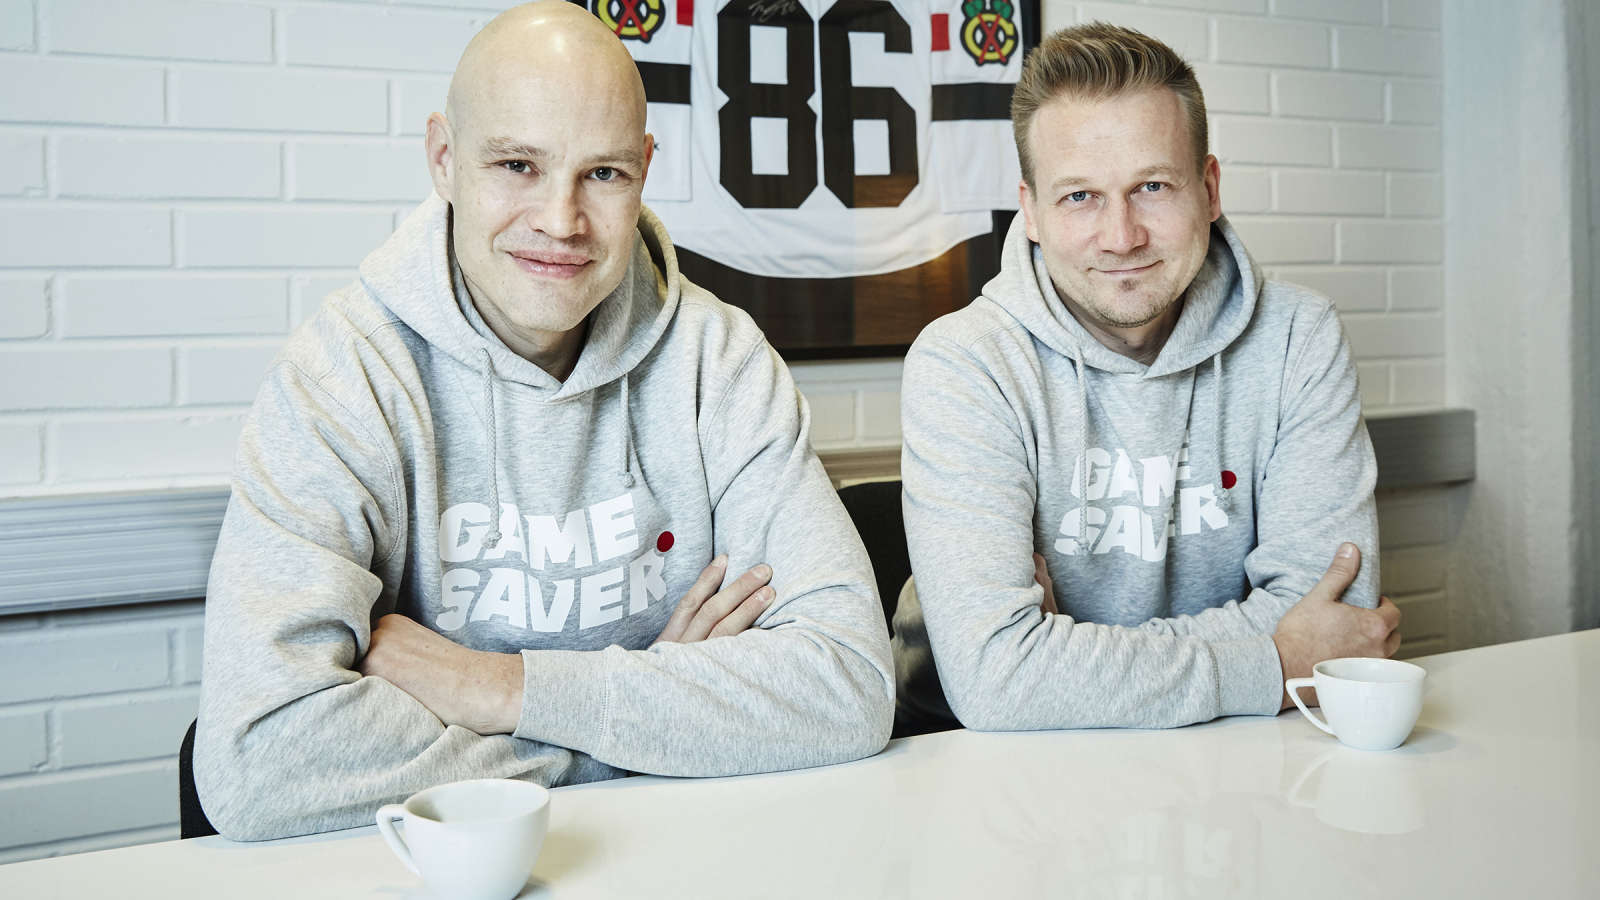 Entinen NHL-kiekkoilija Jarkko Ruutu ja Gamesaverin toimitusjohtaja Vellu Maurola